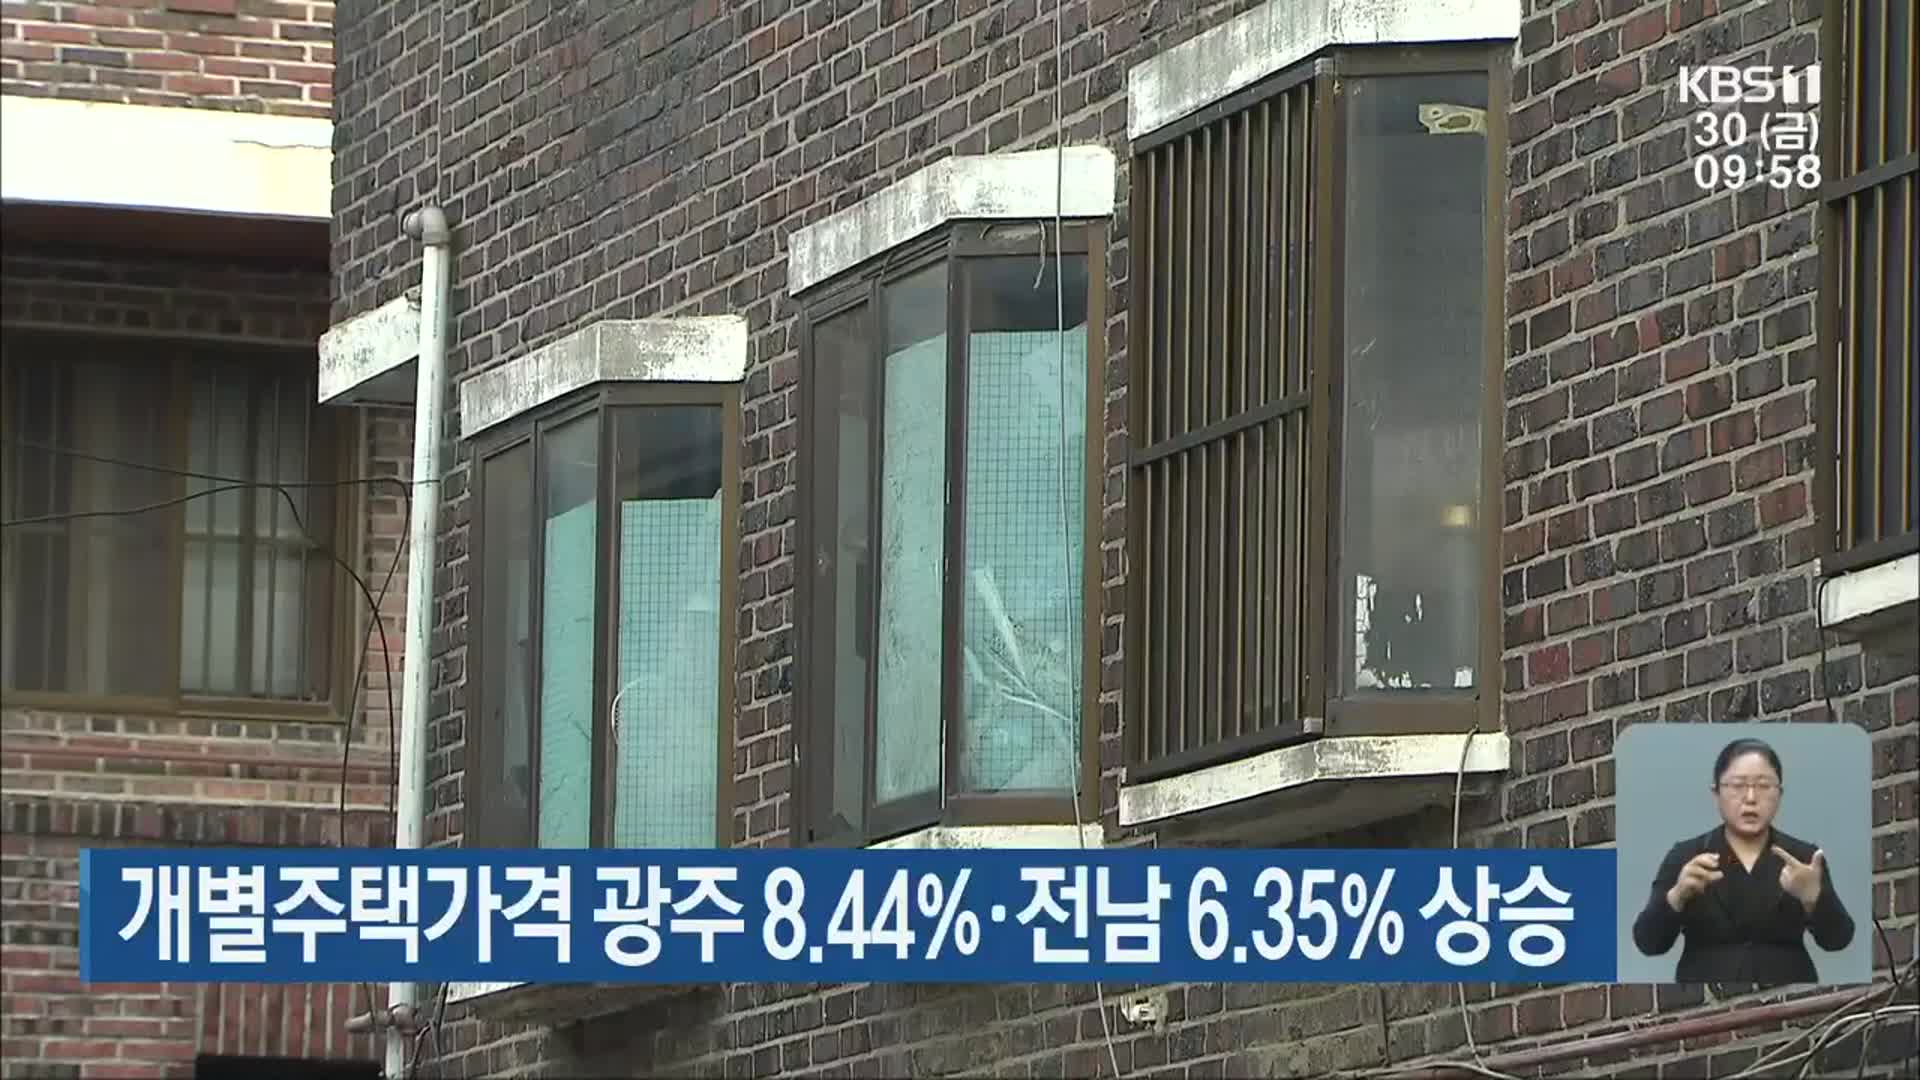 개별주택가격 광주 8.44%· 전남 6.35% 상승